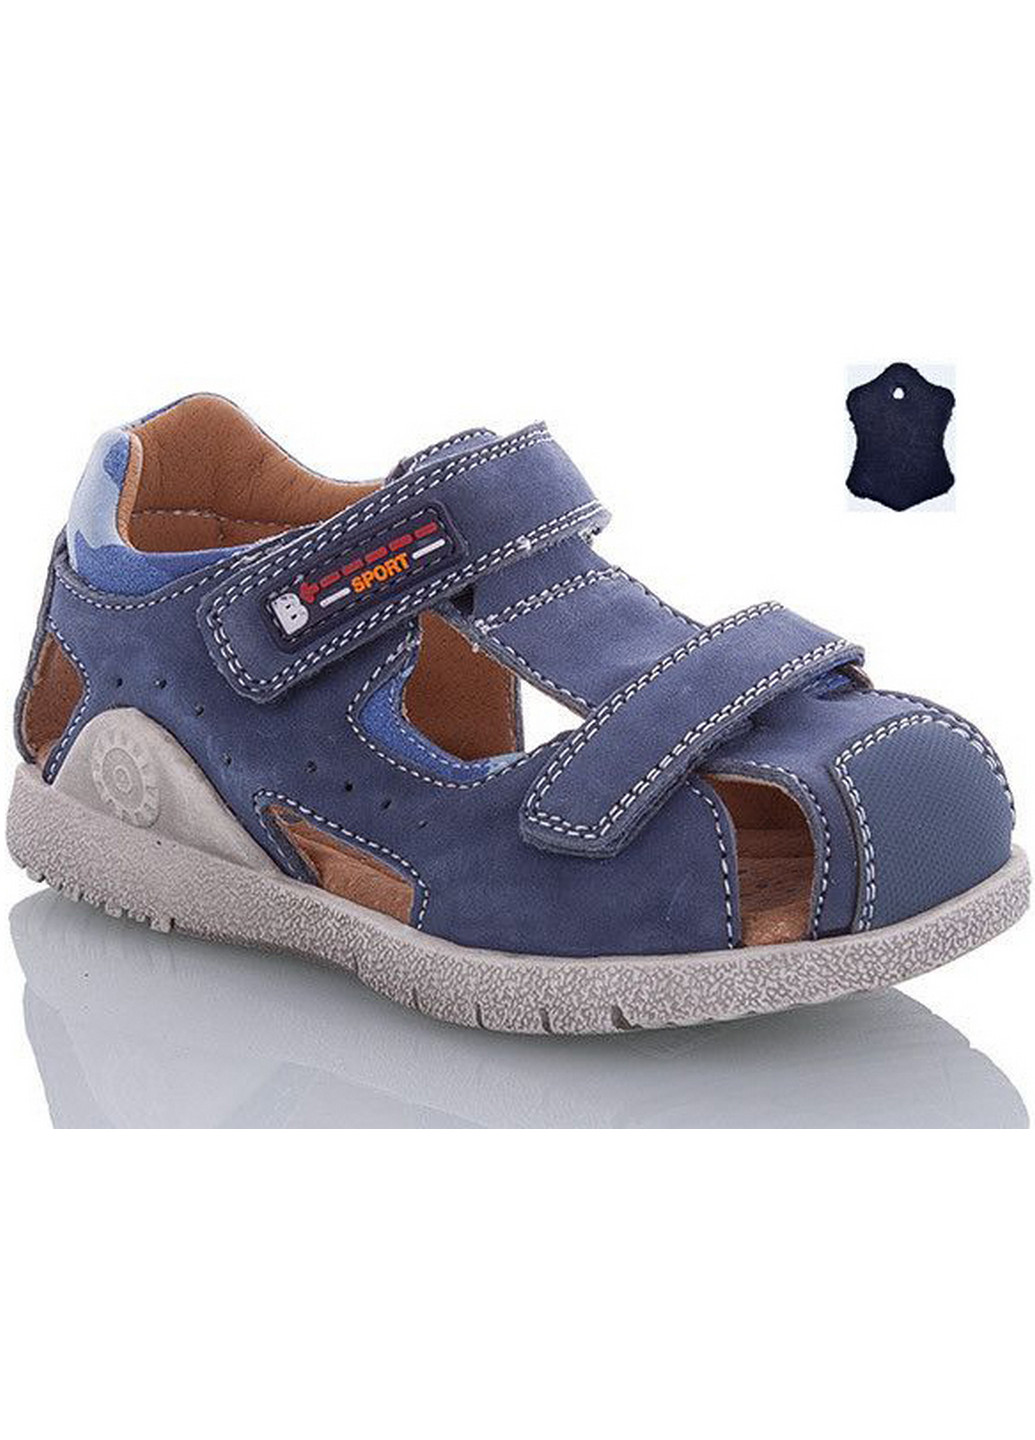 Голубые кэжуал кожаные сандалии ma1373-17 29 голубой TTToTa